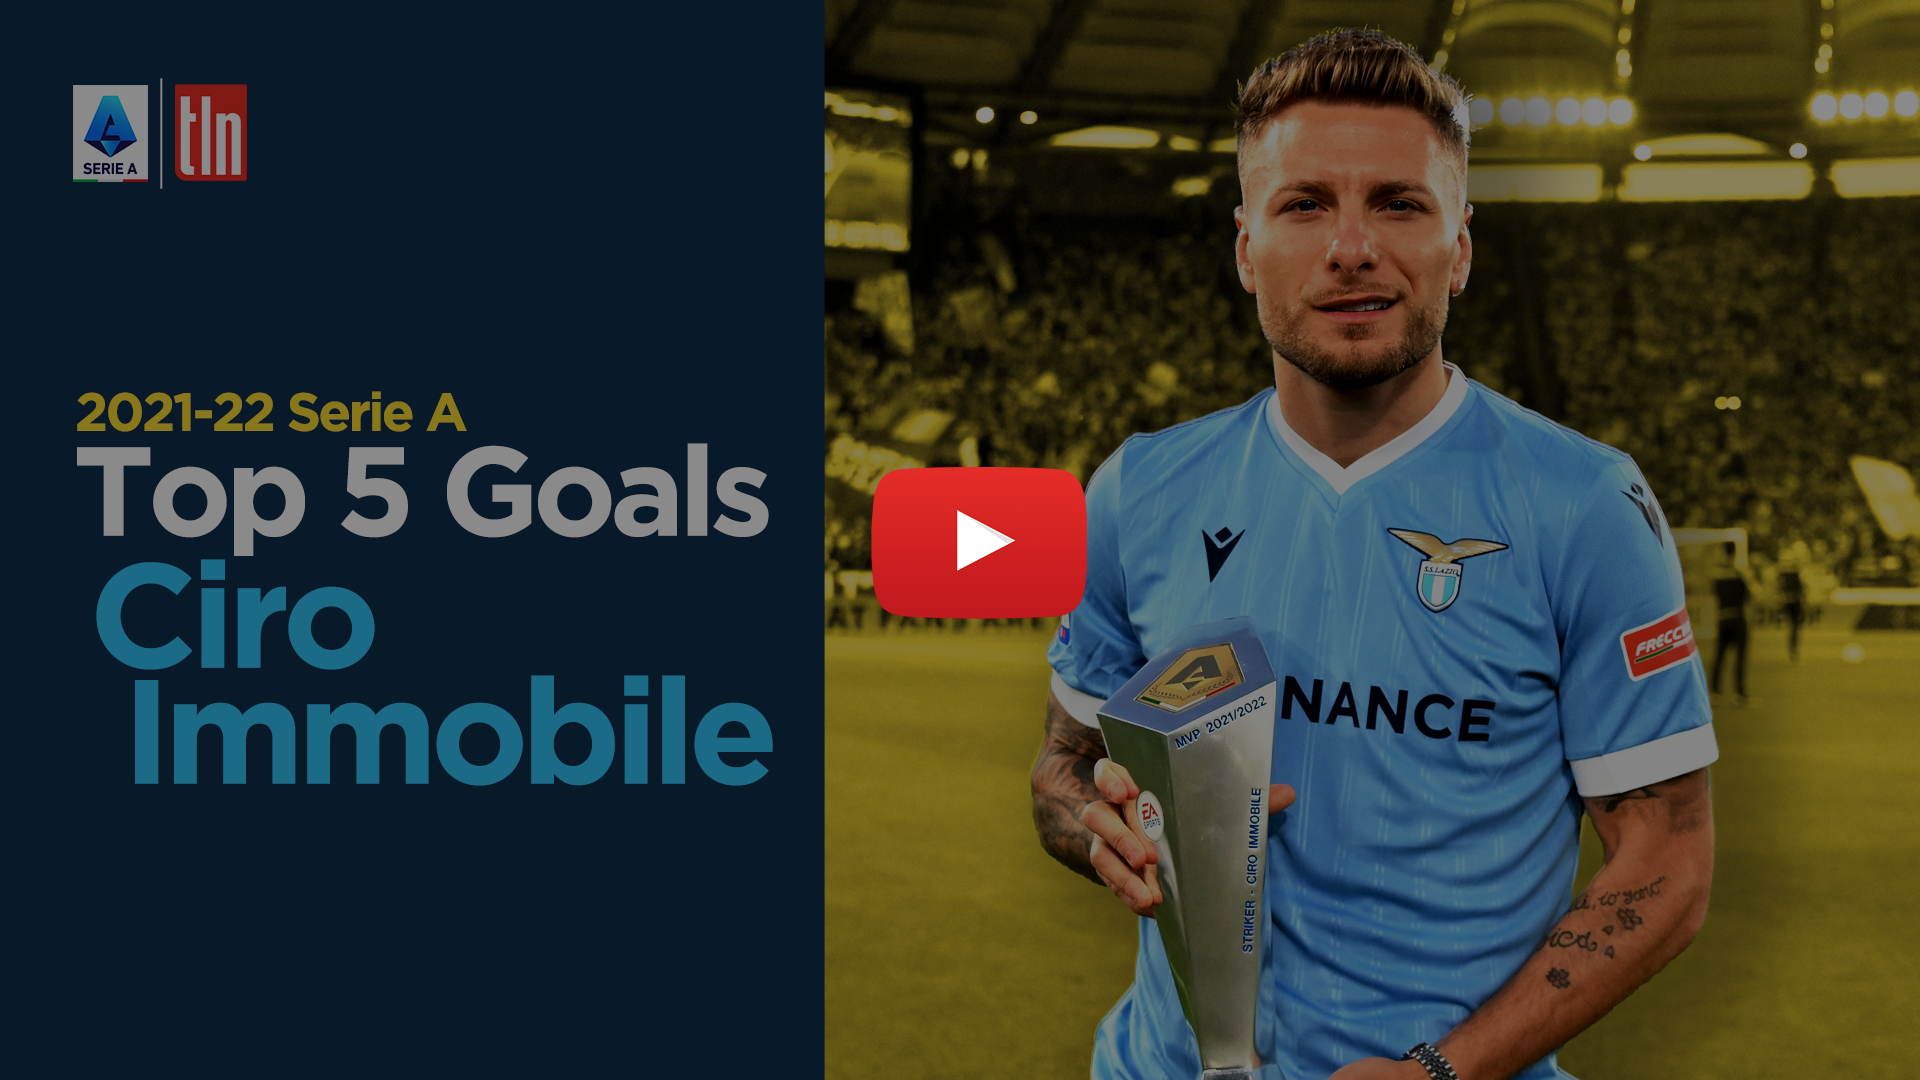 Ciro Immobile | Lazio | Top 5 Goals | 2021-22 Serie A